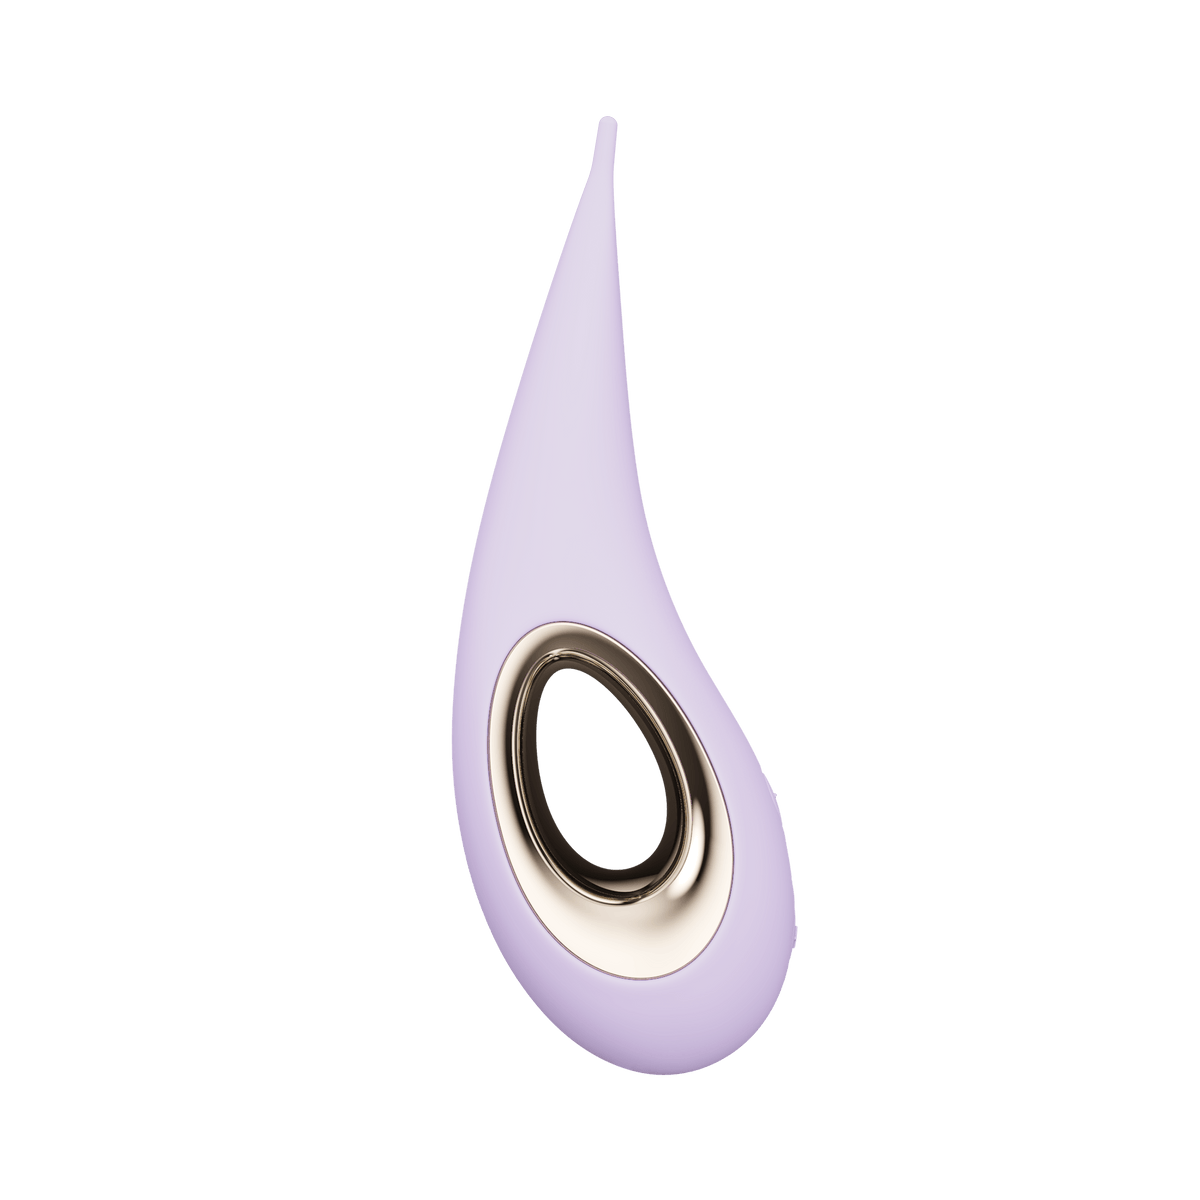 LELO Dot Clitoral Pinpoint Vibrator - Lilac Vibrators Lelo   